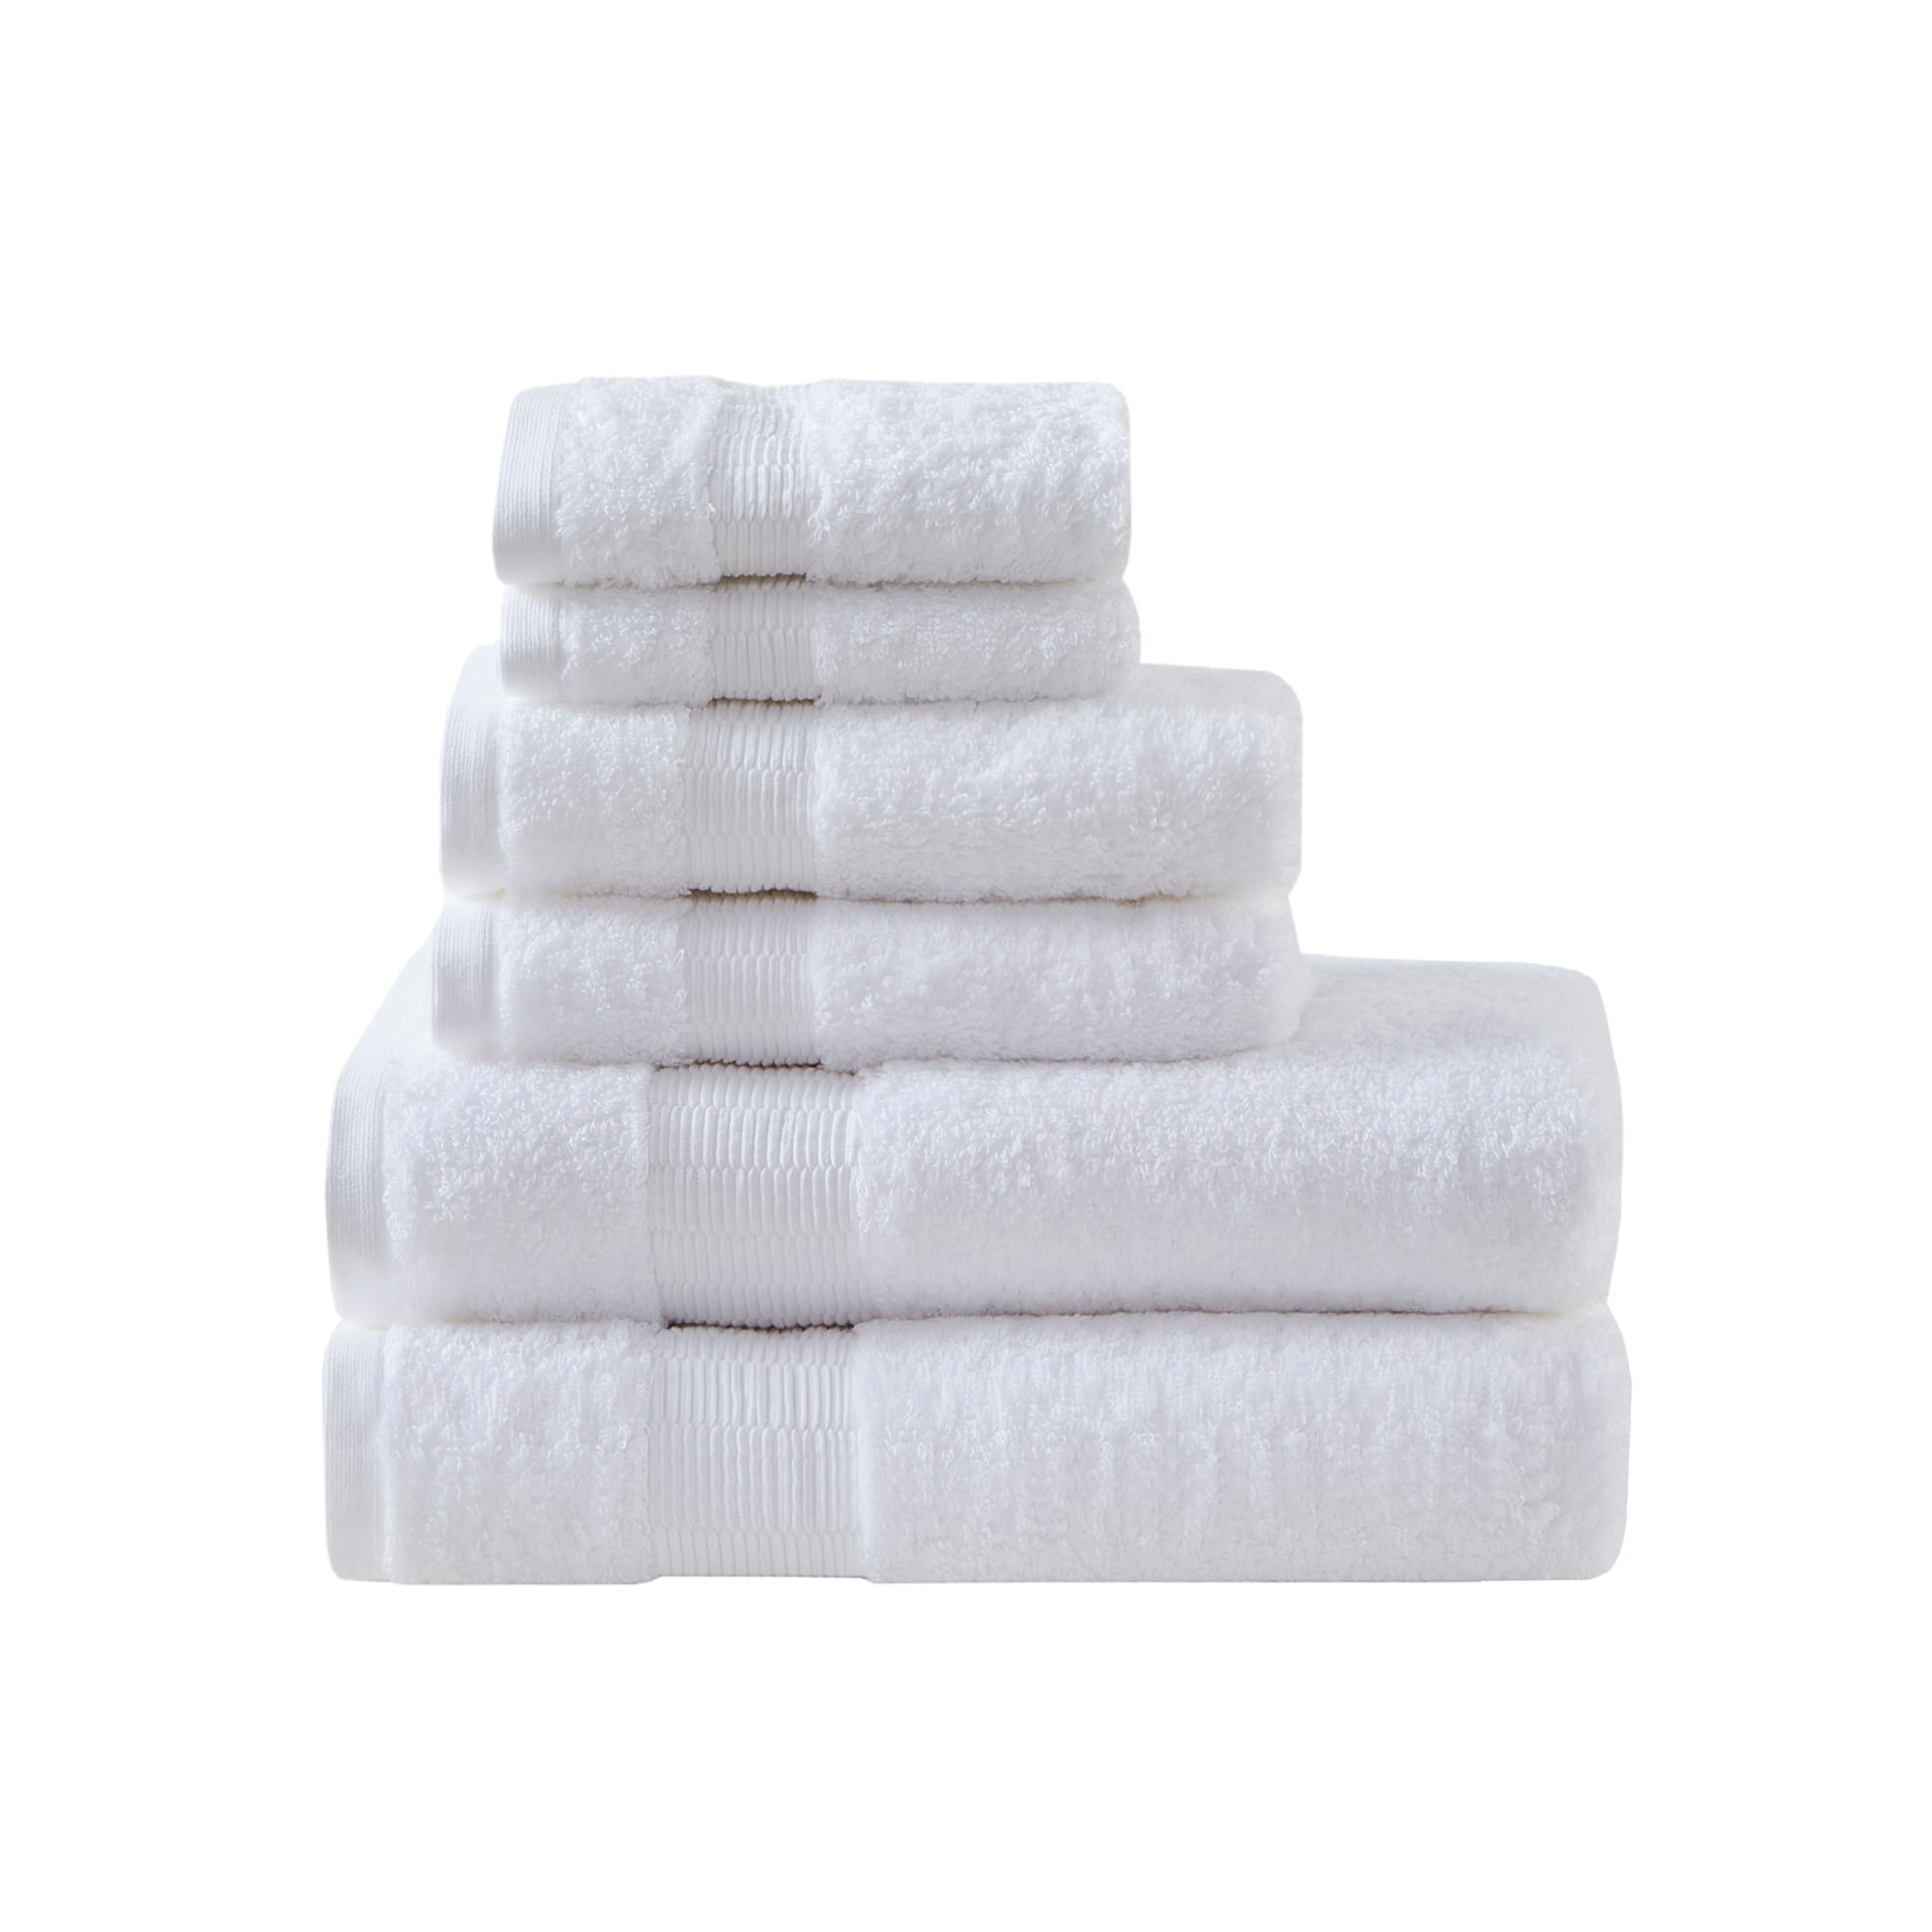 30x60 Premium White Bath Sheet Towel 20lb/dz - Wholesale Towel, Inc.